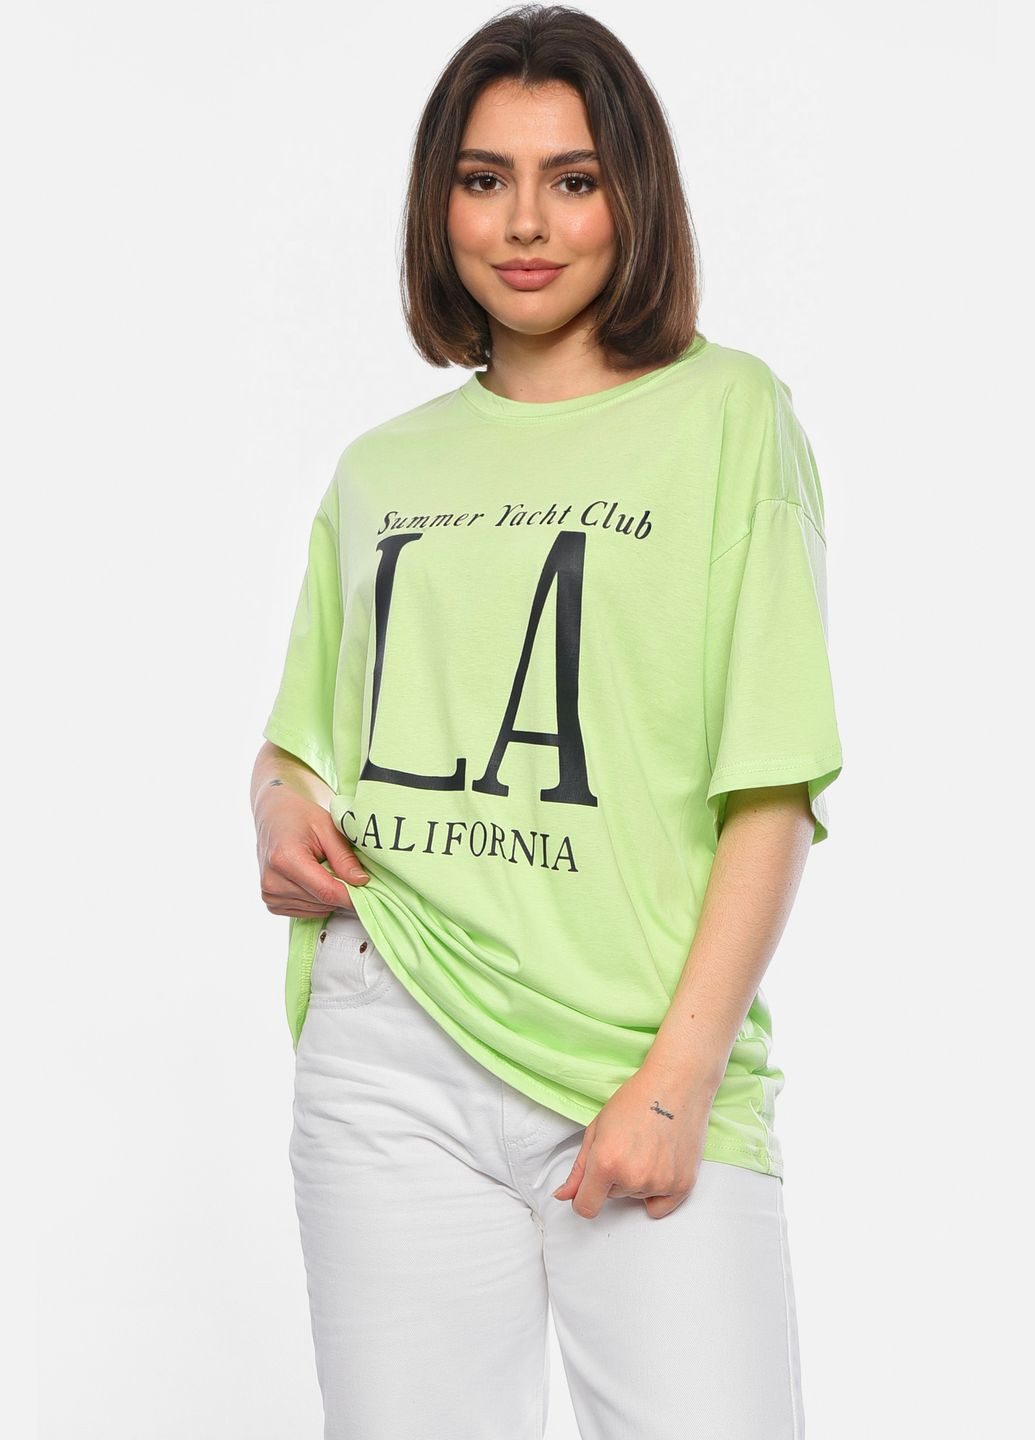 Салатовая летняя футболка женская полубатальная салатового цвета Let's Shop